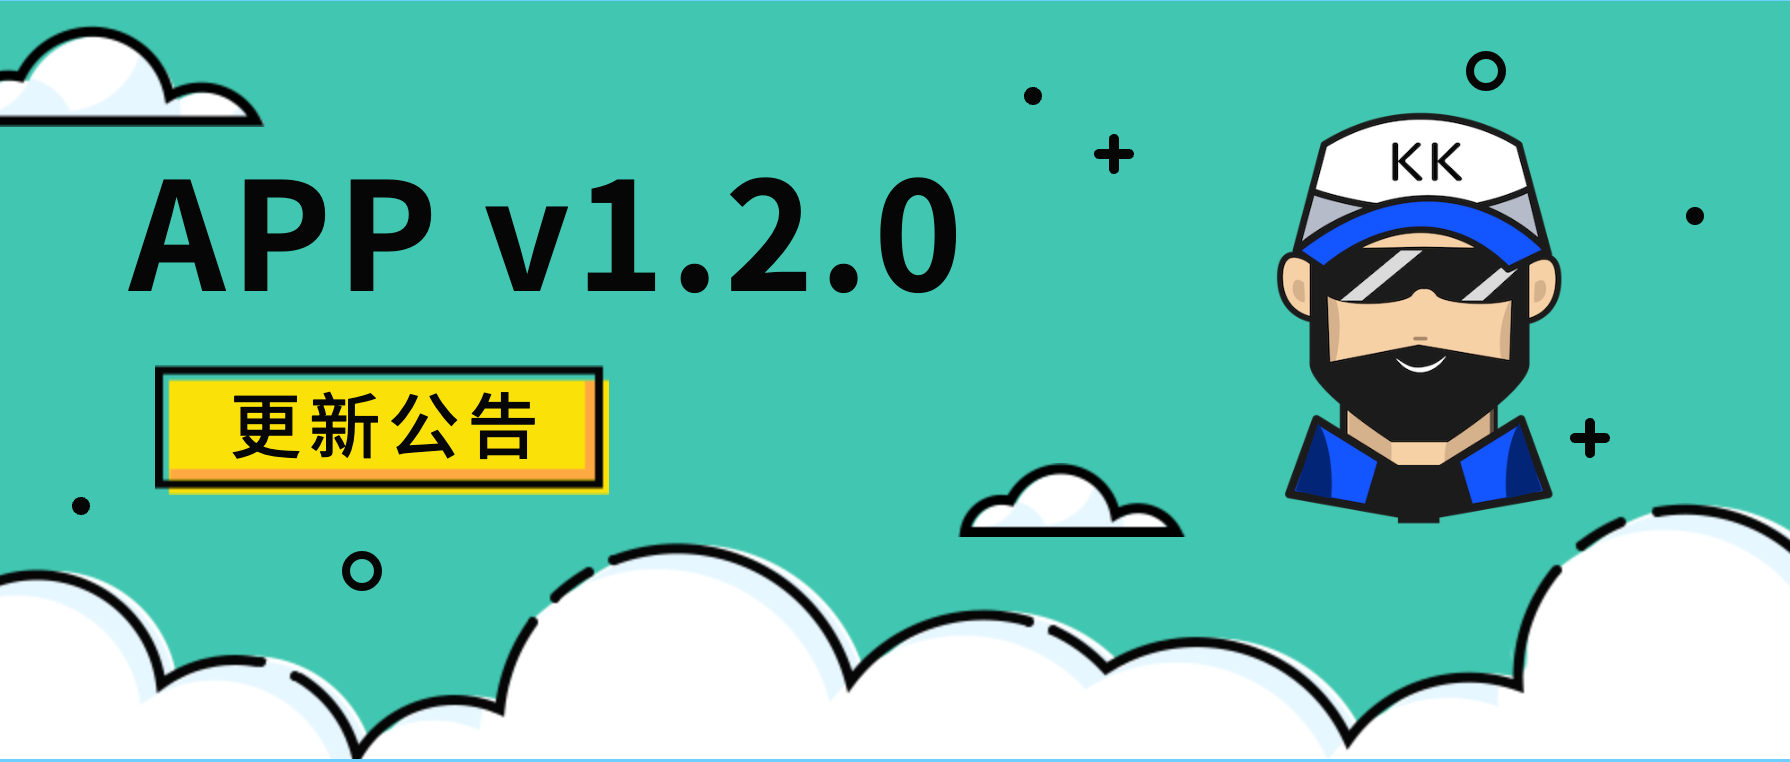 APP 1.2.0 更新说明